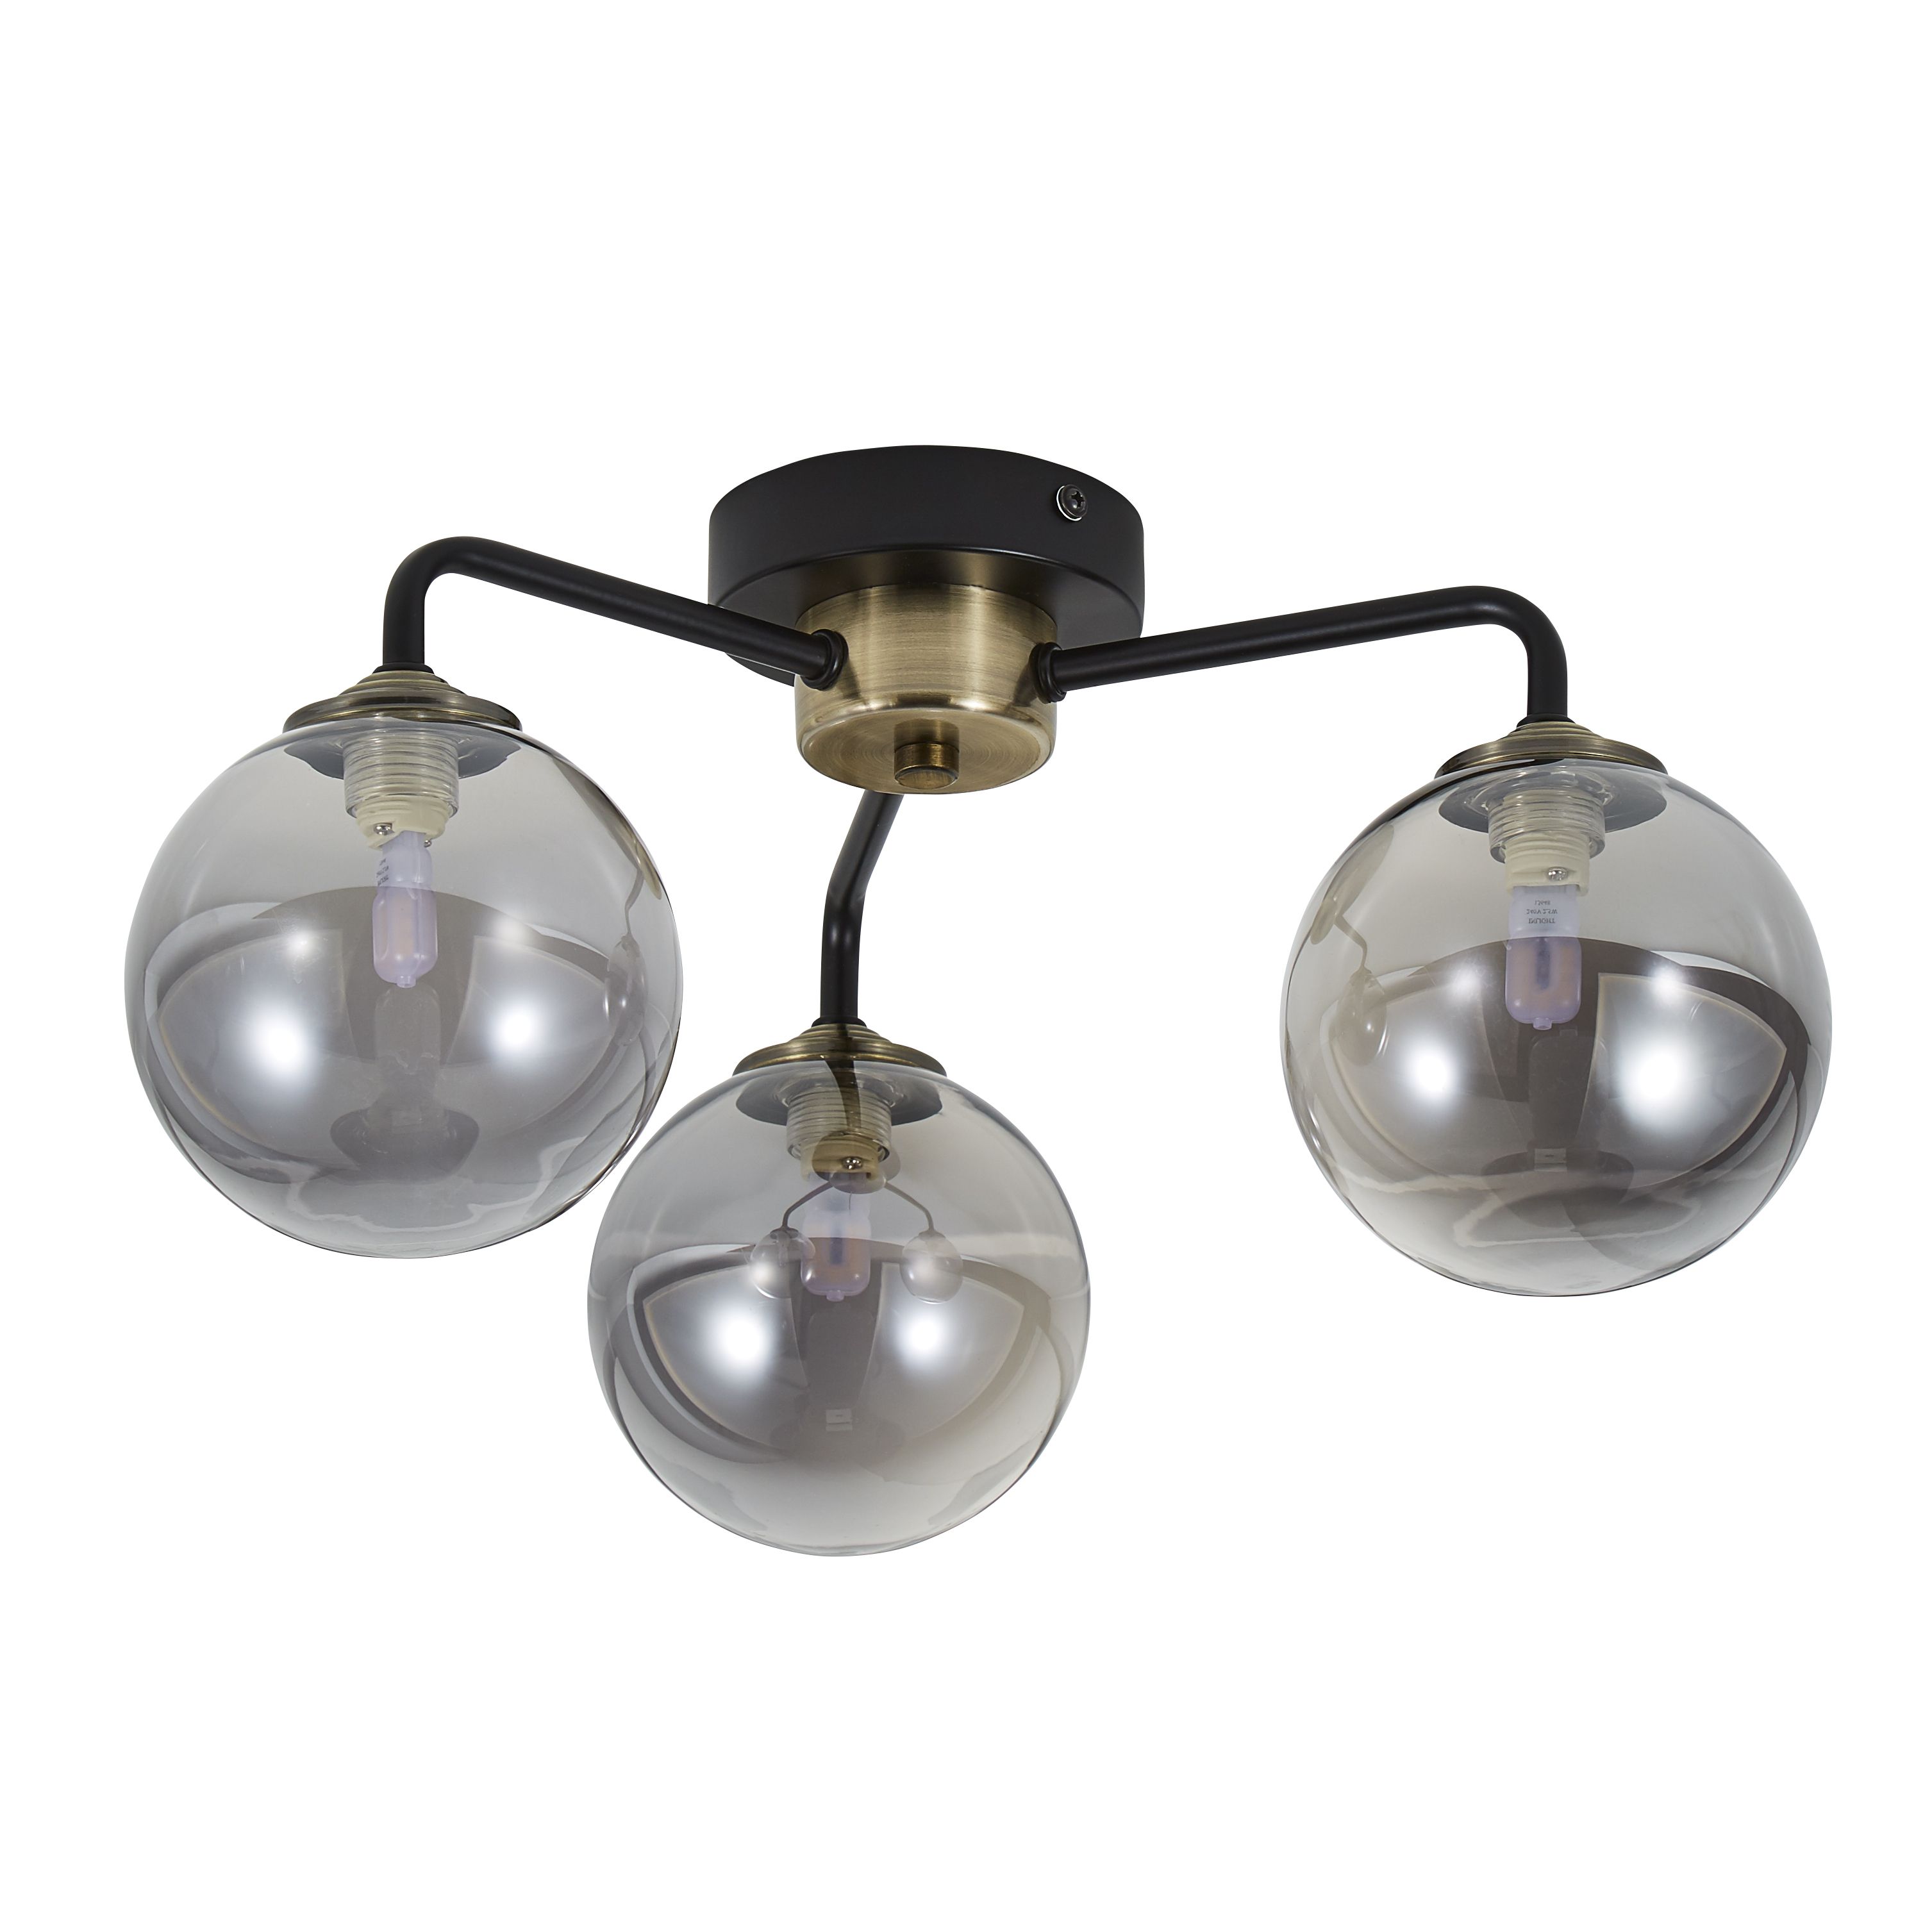 Inlight Agile Matt Glass & metal Black Antique brass & smoked glass effect Ceiling light